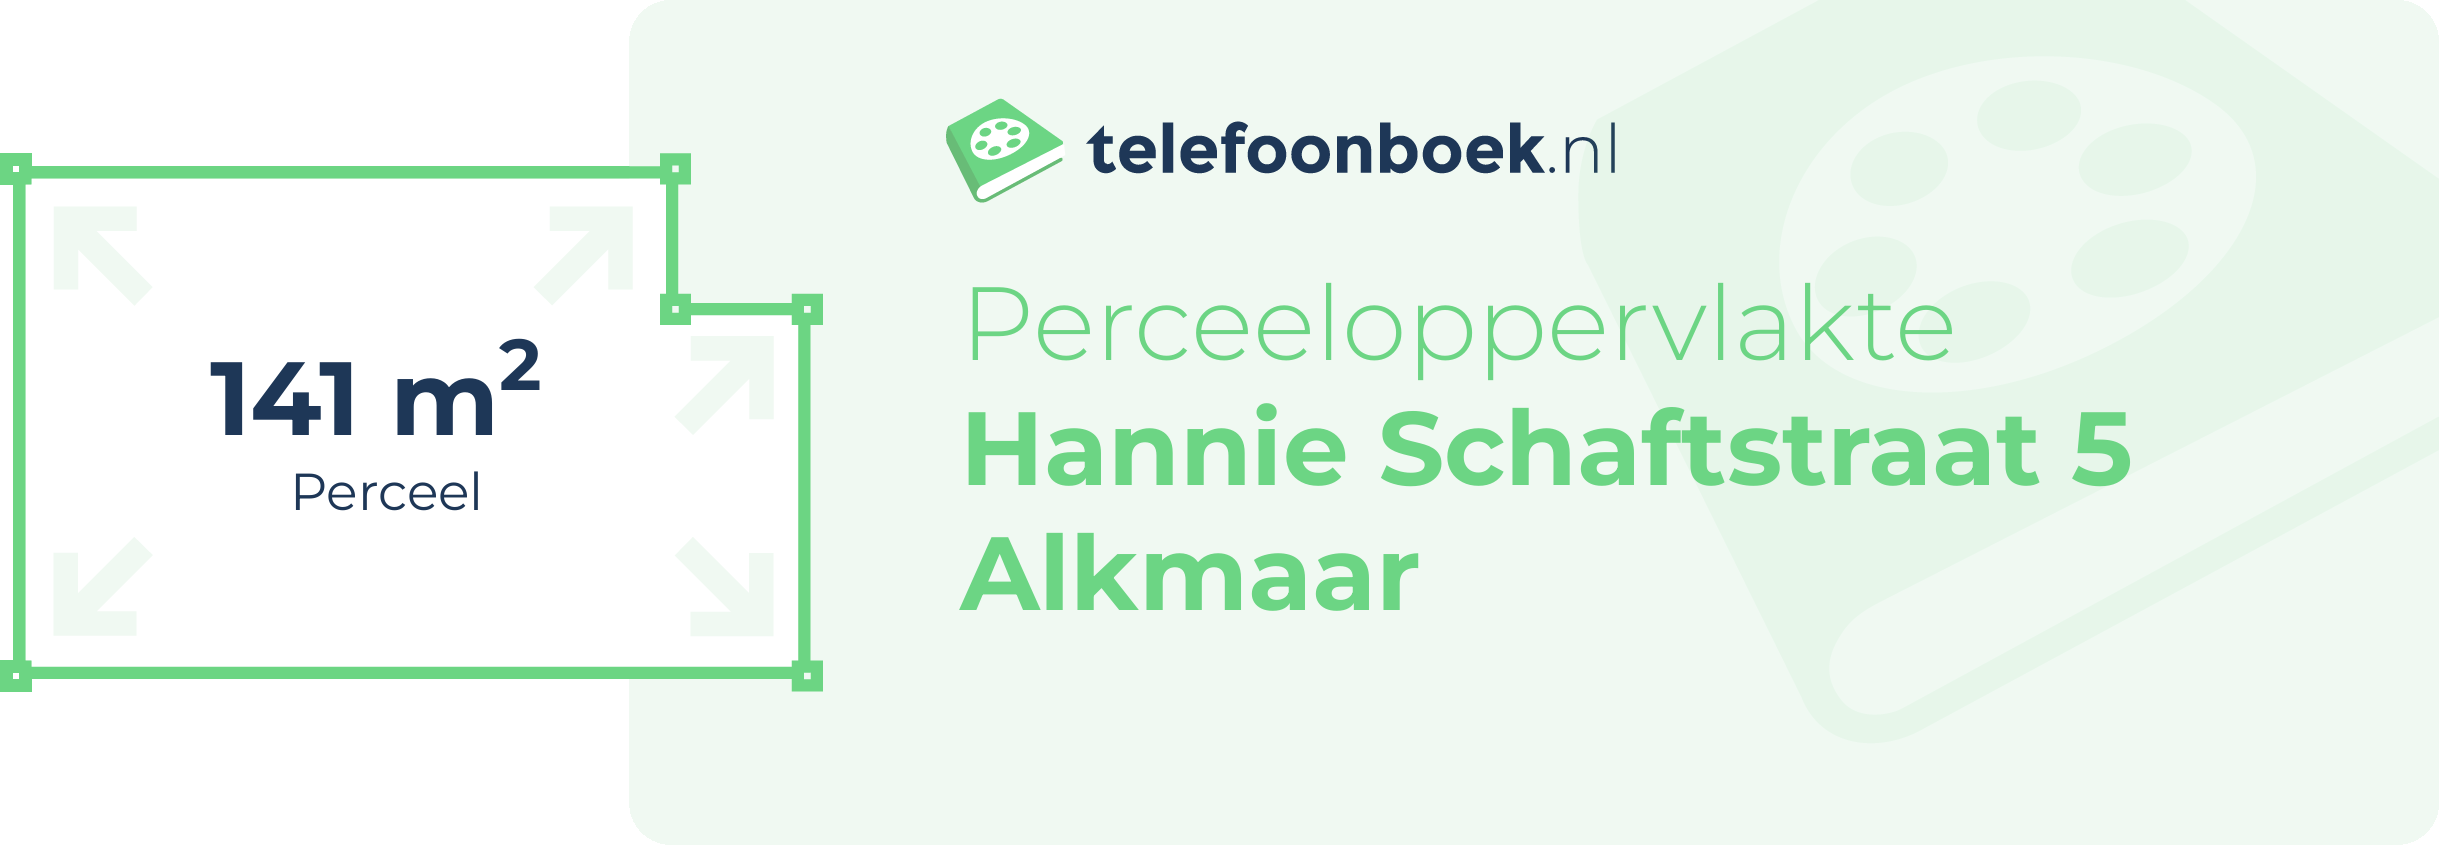 Perceeloppervlakte Hannie Schaftstraat 5 Alkmaar